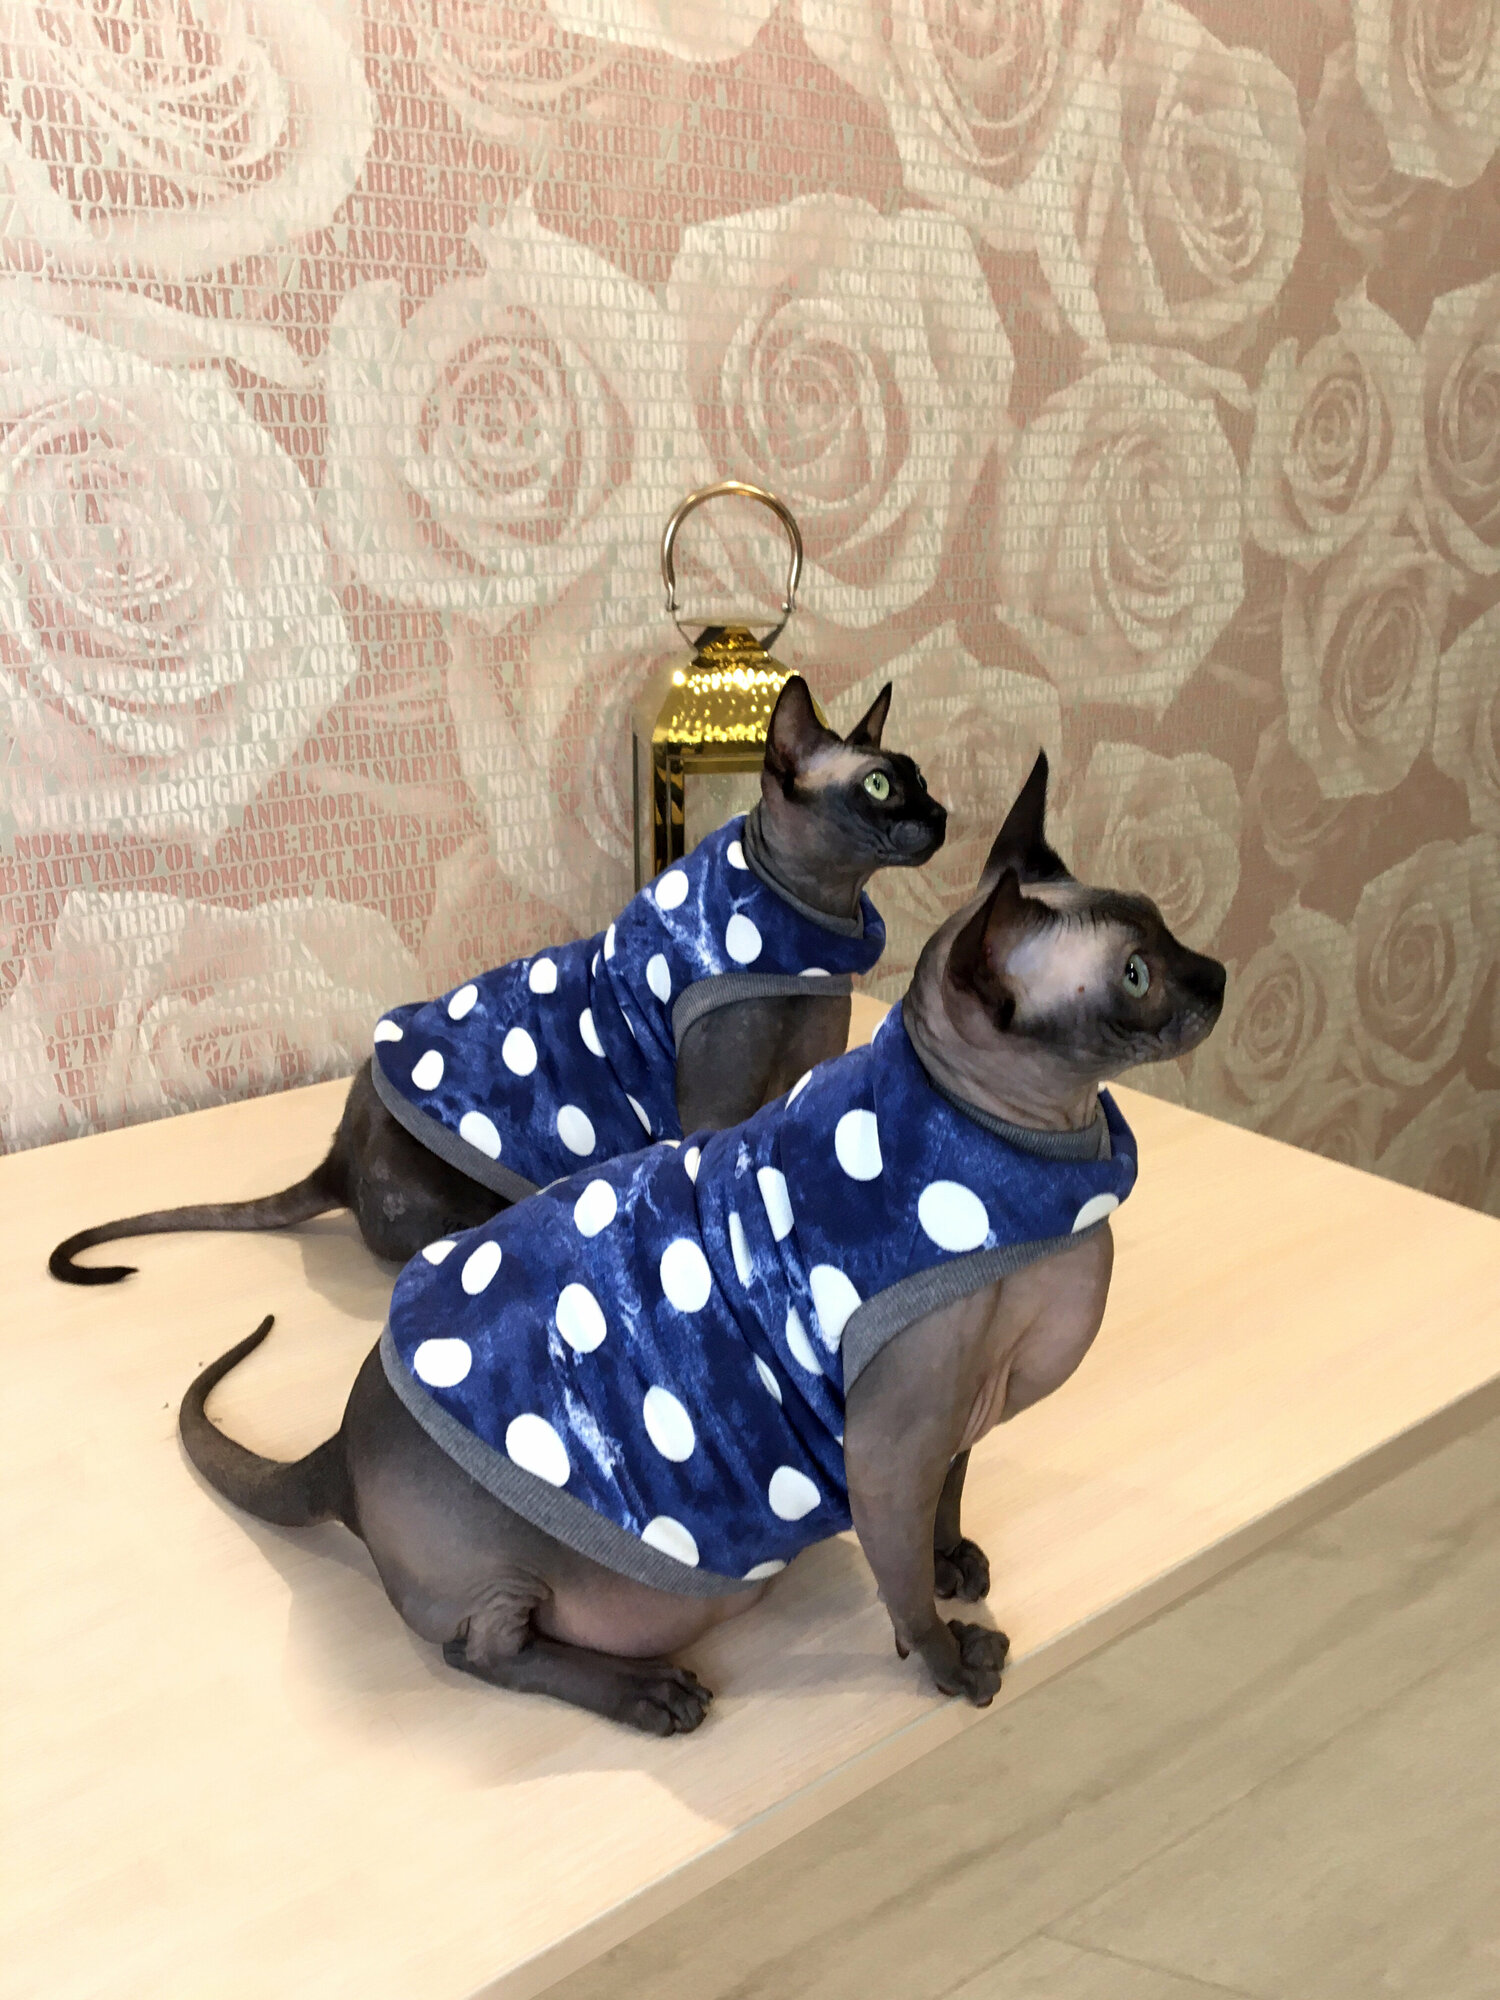 Одежда для животных кошек сфинксов Размер L